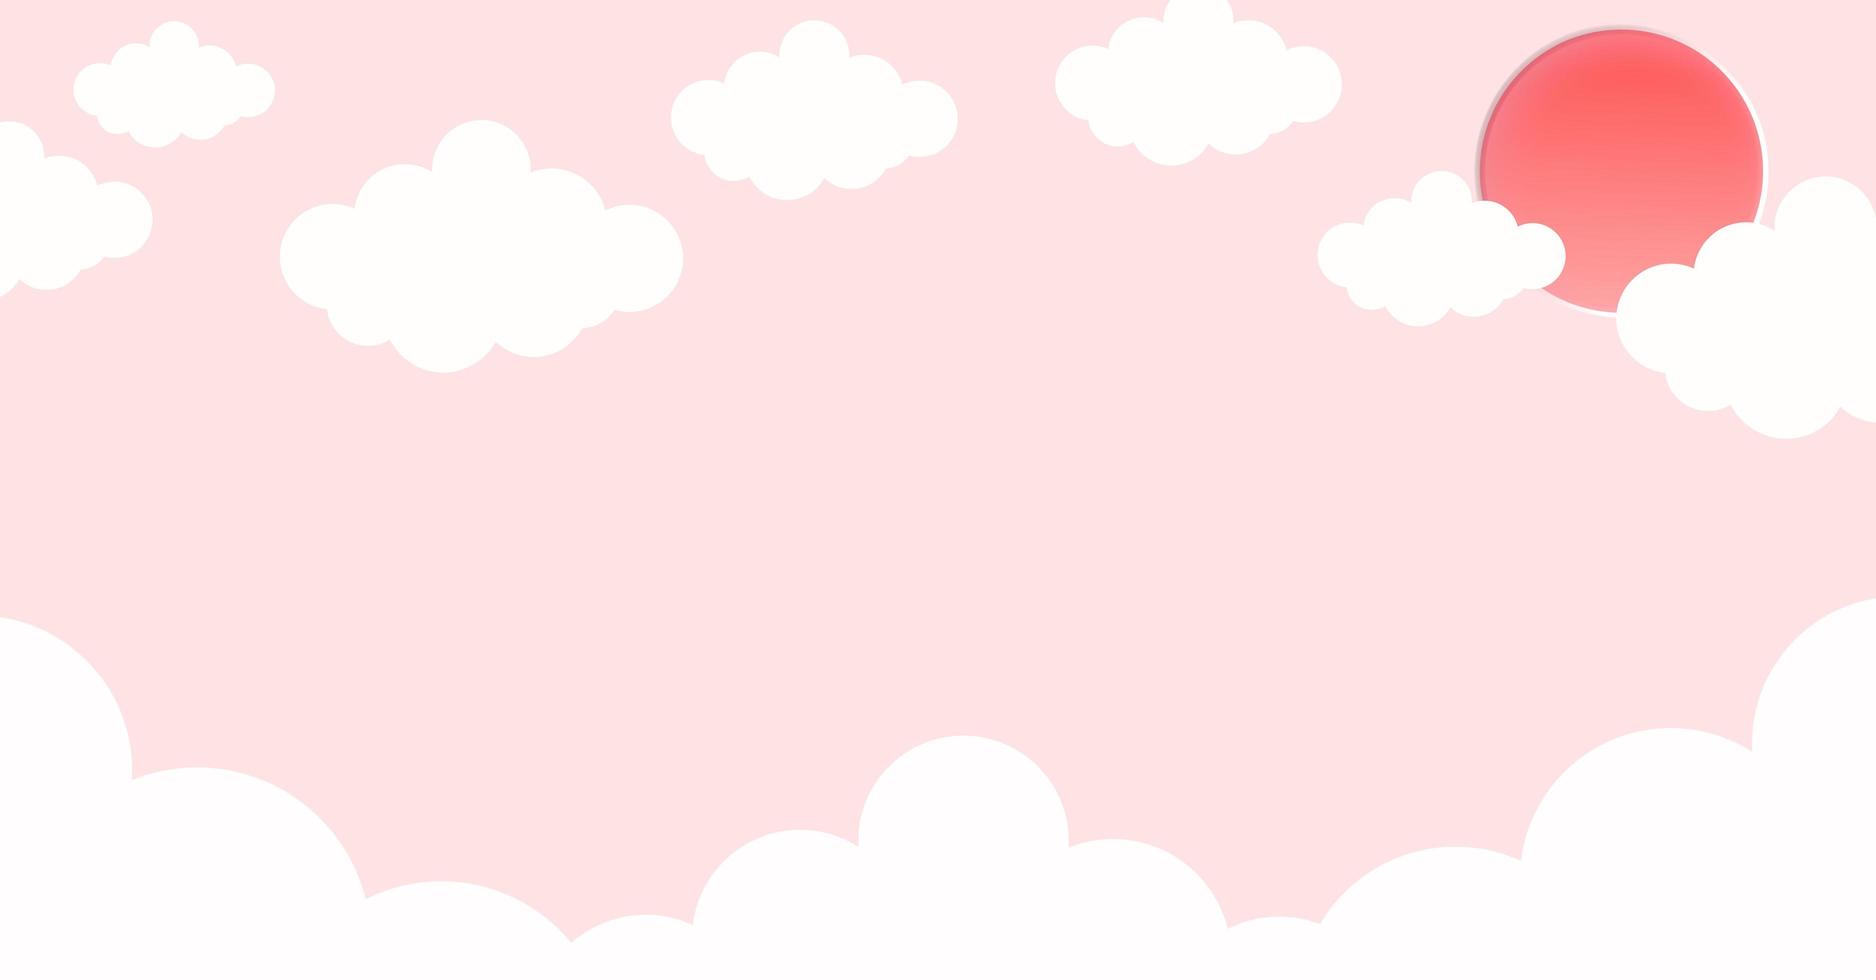 fumetto di nuvole astratte kawaii su cielo blu, sfondo. concetto per bambini e asili nido o presentazione foto